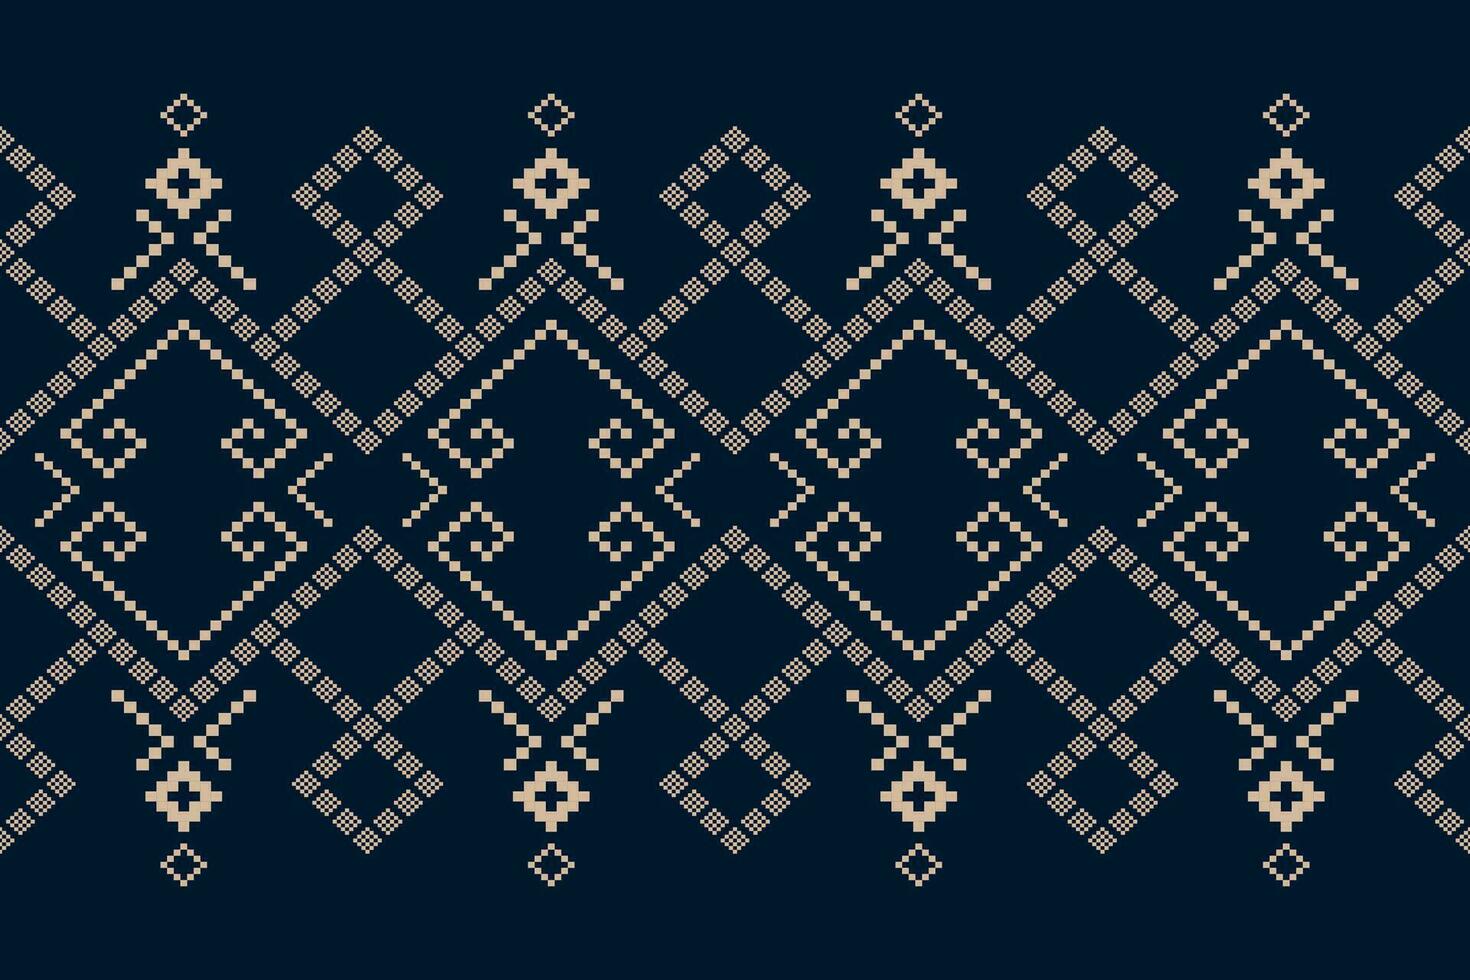 indaco Marina Militare blu geometrico tradizionale etnico modello ikat senza soluzione di continuità modello astratto design per tessuto Stampa stoffa vestito tappeto le tende e sarong azteco africano indiano indonesiano vettore